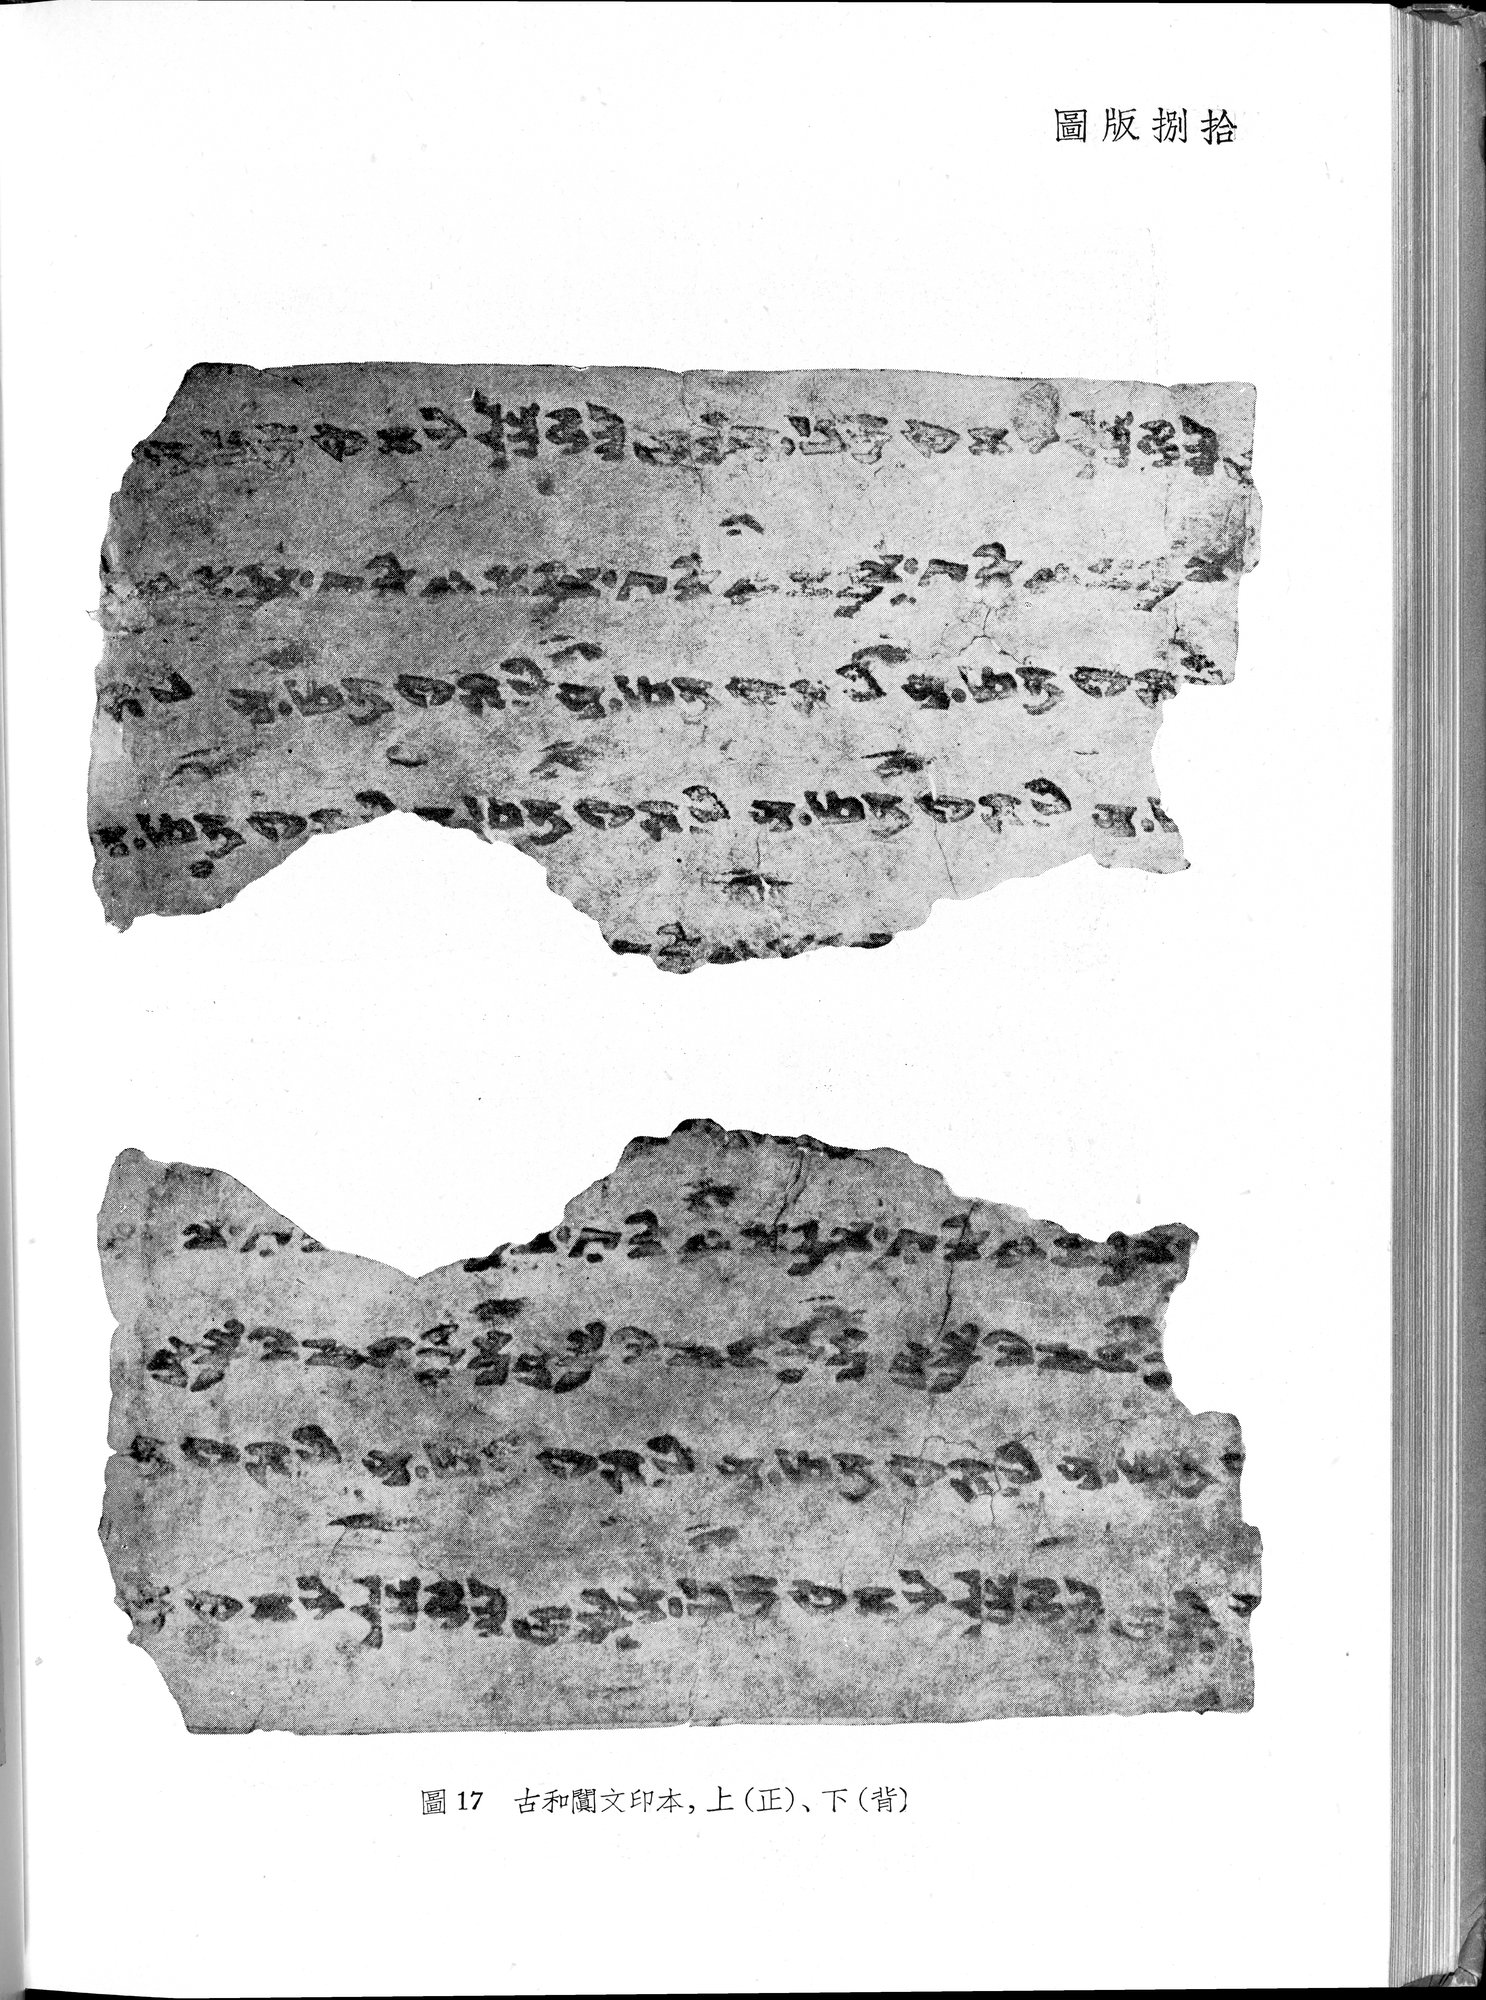 塔里木盆地考古記 : vol.1 / Page 314 (Grayscale High Resolution Image)